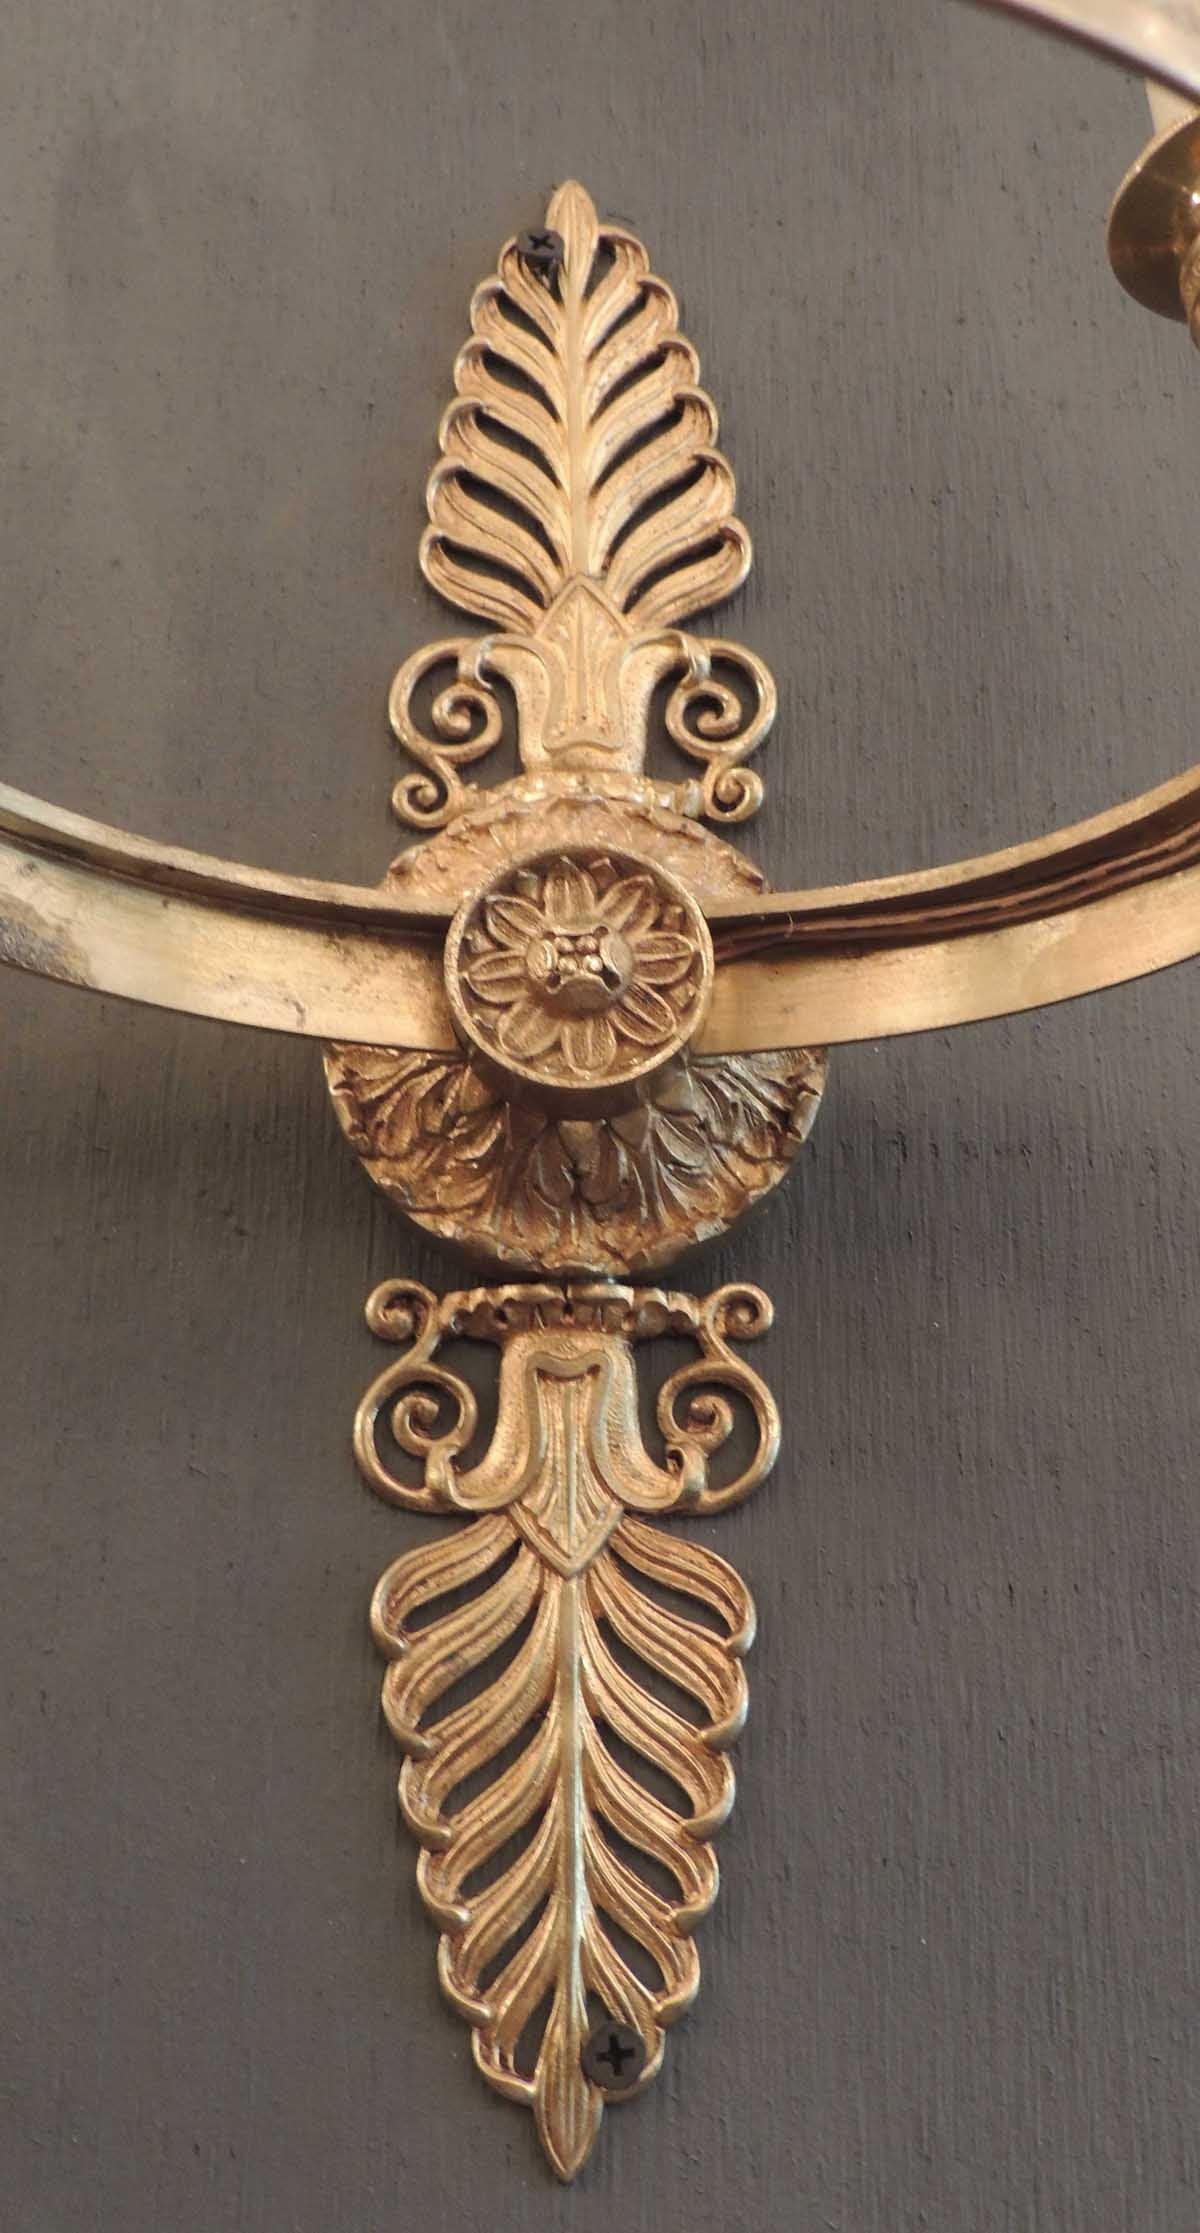 Ces appliques en bronze sont de style Second Empire et ont été créées en France, vers 1850. La paire comporte trois lumières montées sur un cercle à motifs. Les plaques murales de ces appliques comportent deux grands anthémons au-dessus et